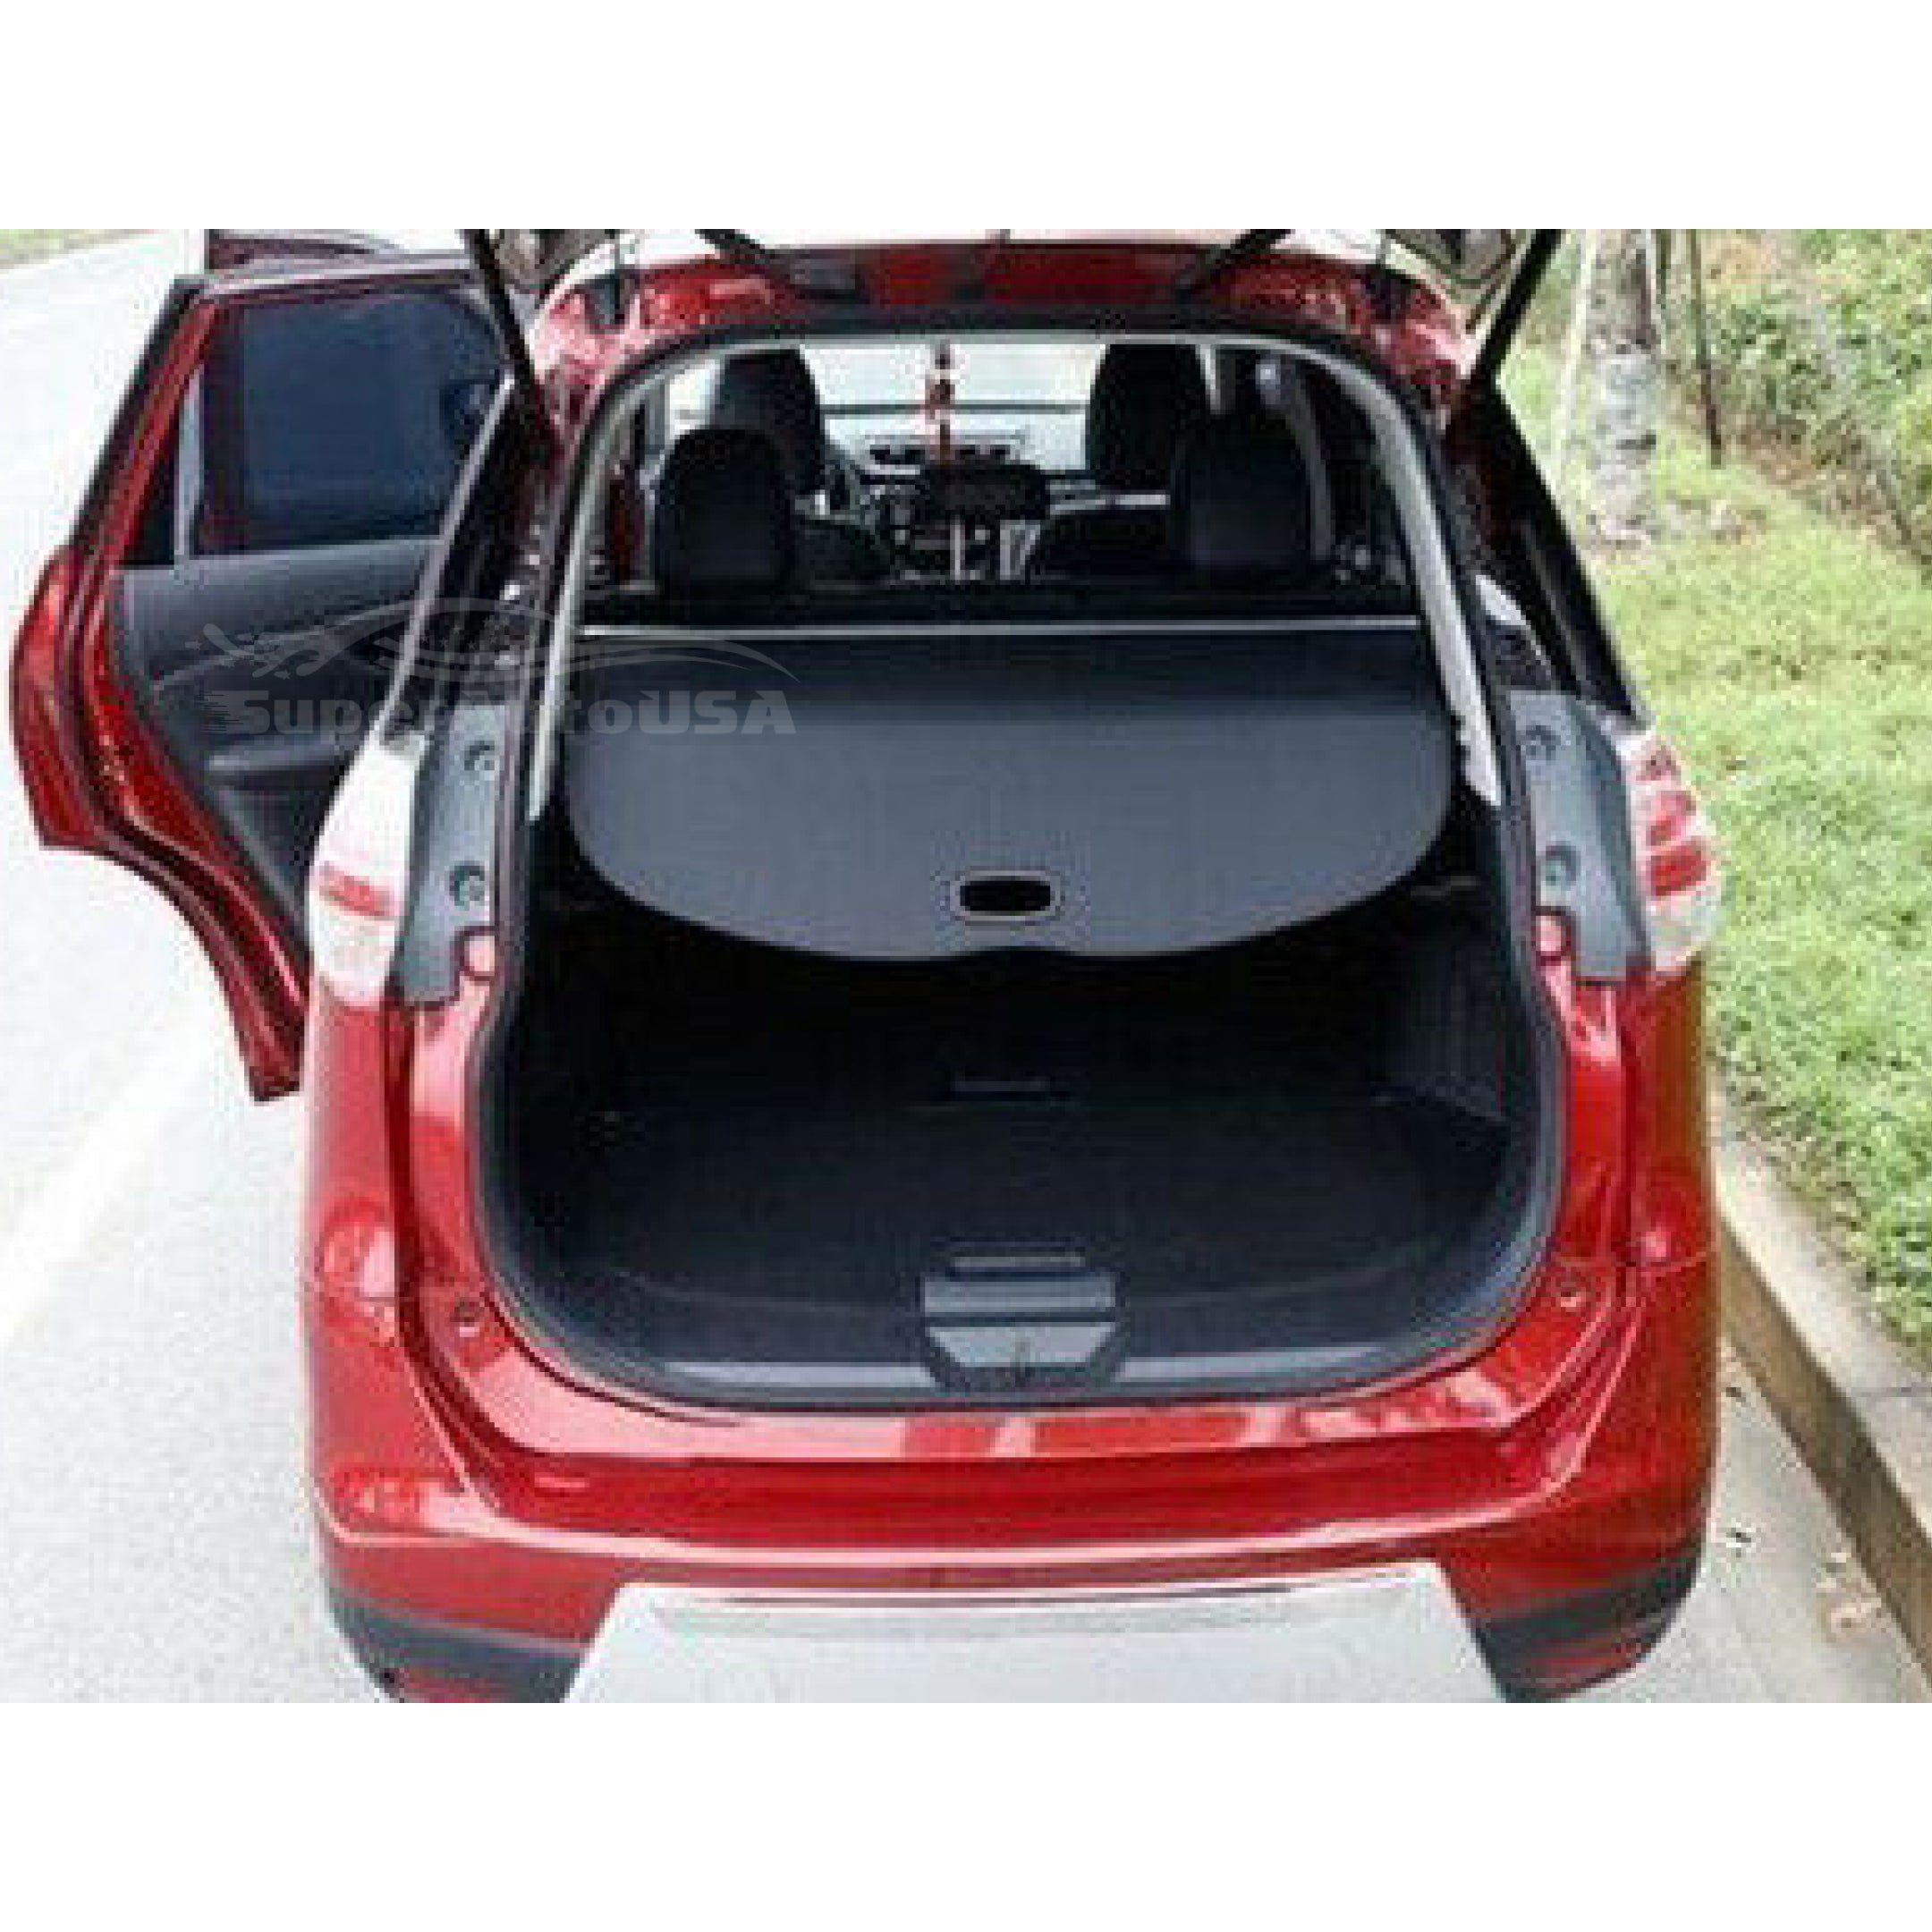 Se adapta a la cubierta de carga Tonneau retráctil del maletero trasero de Nissan Rogue 2014-2020 (negro)